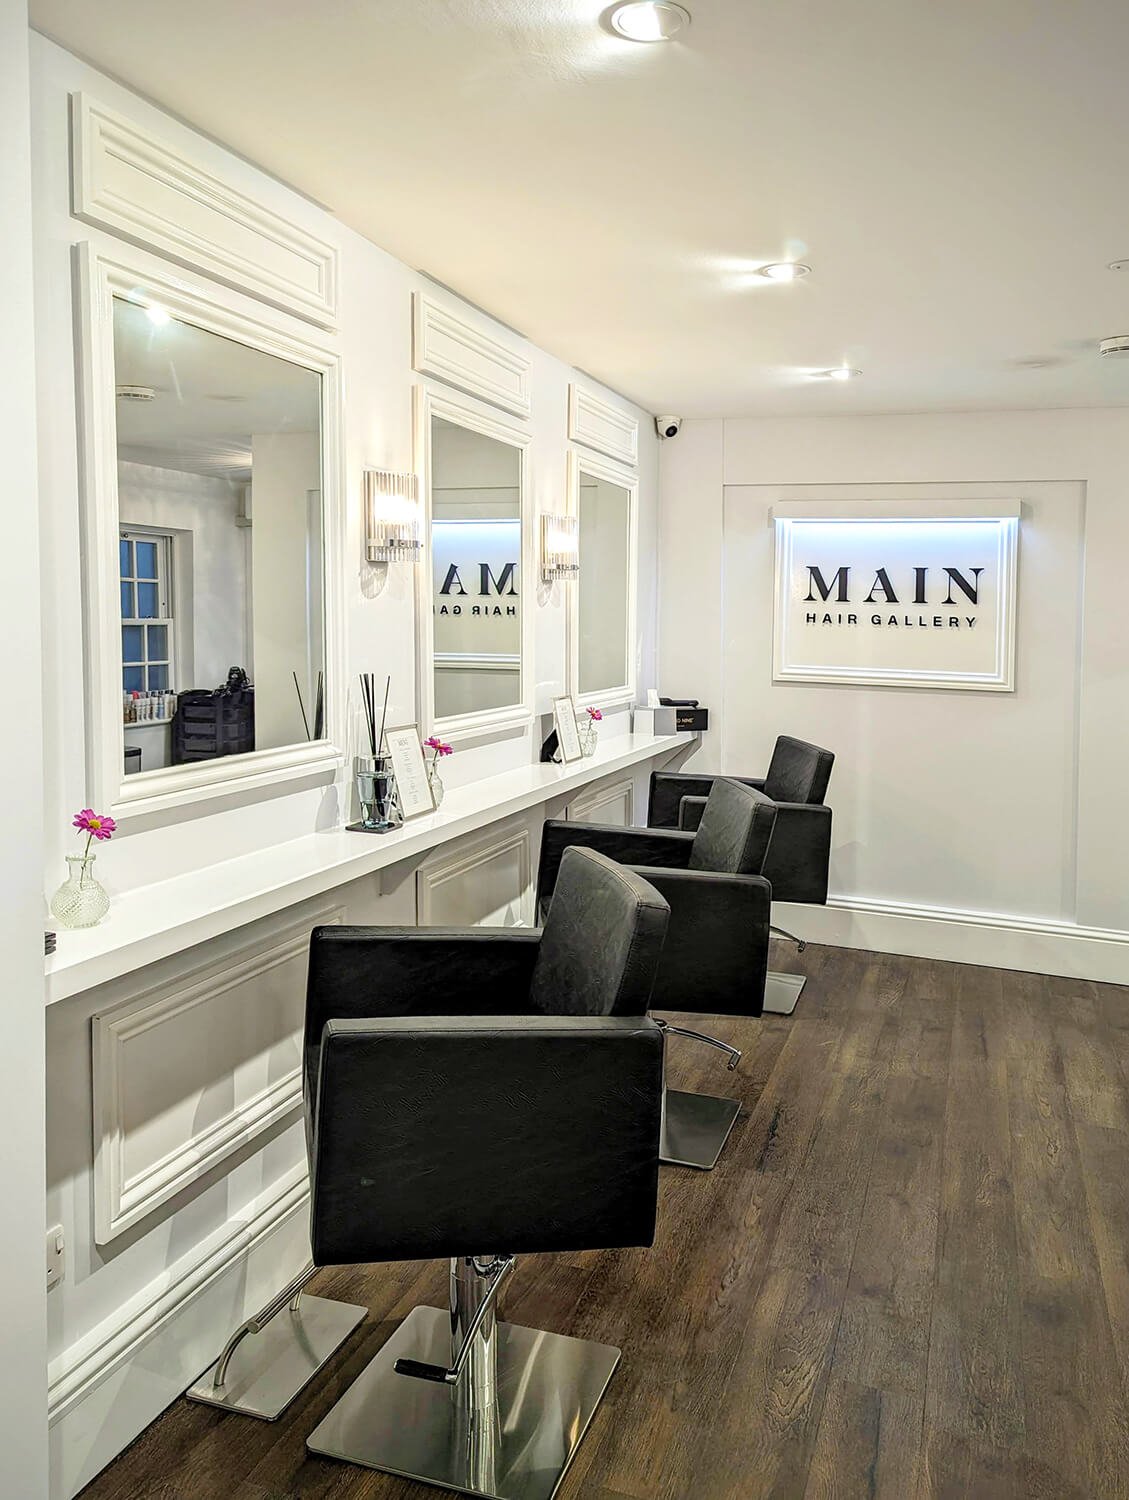 Main Hair Gallery | Harpenden, Hertfordshire — We Are Harpenden